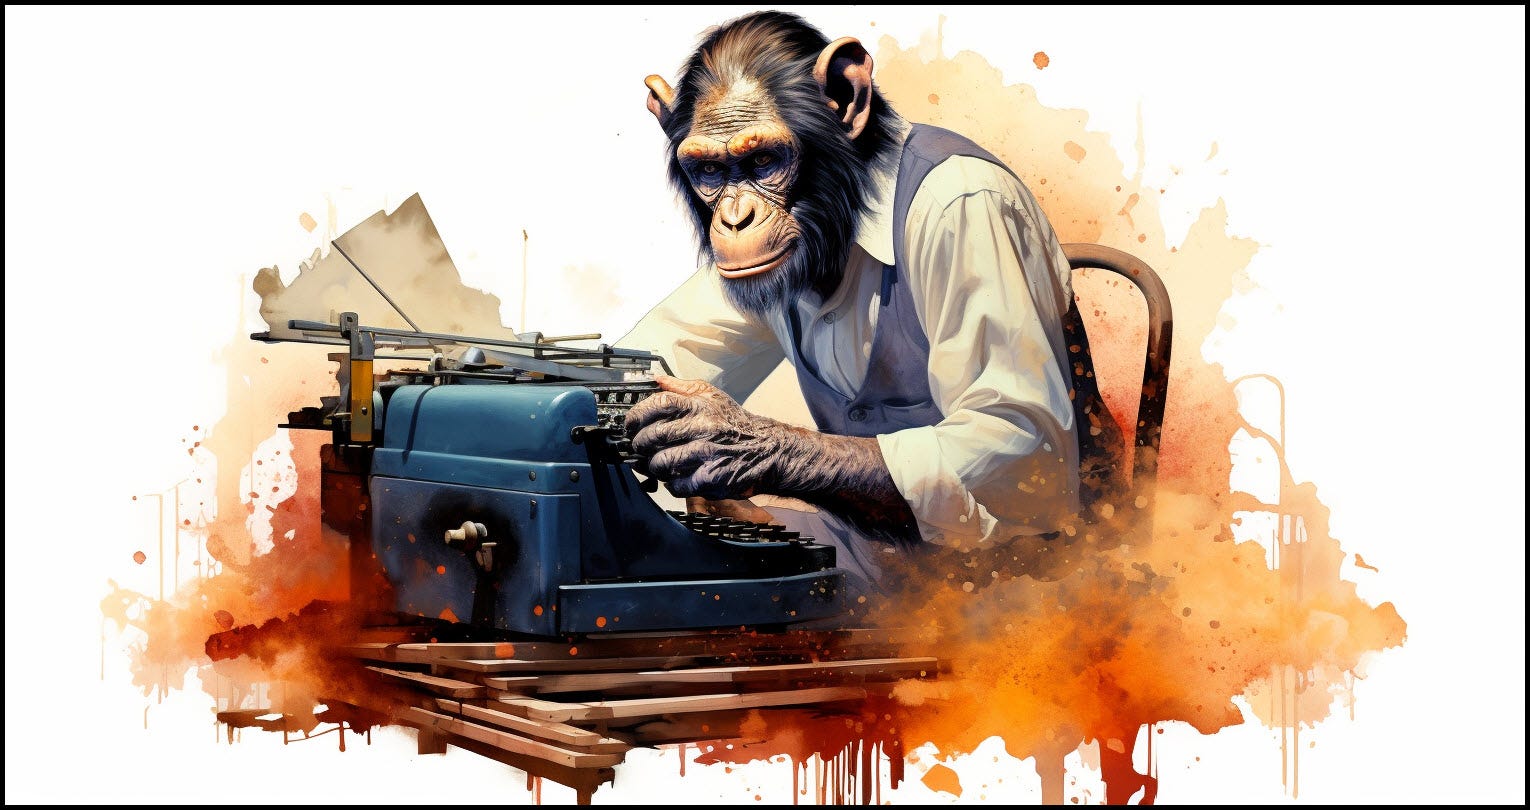 Chimp typing at a typewriter.